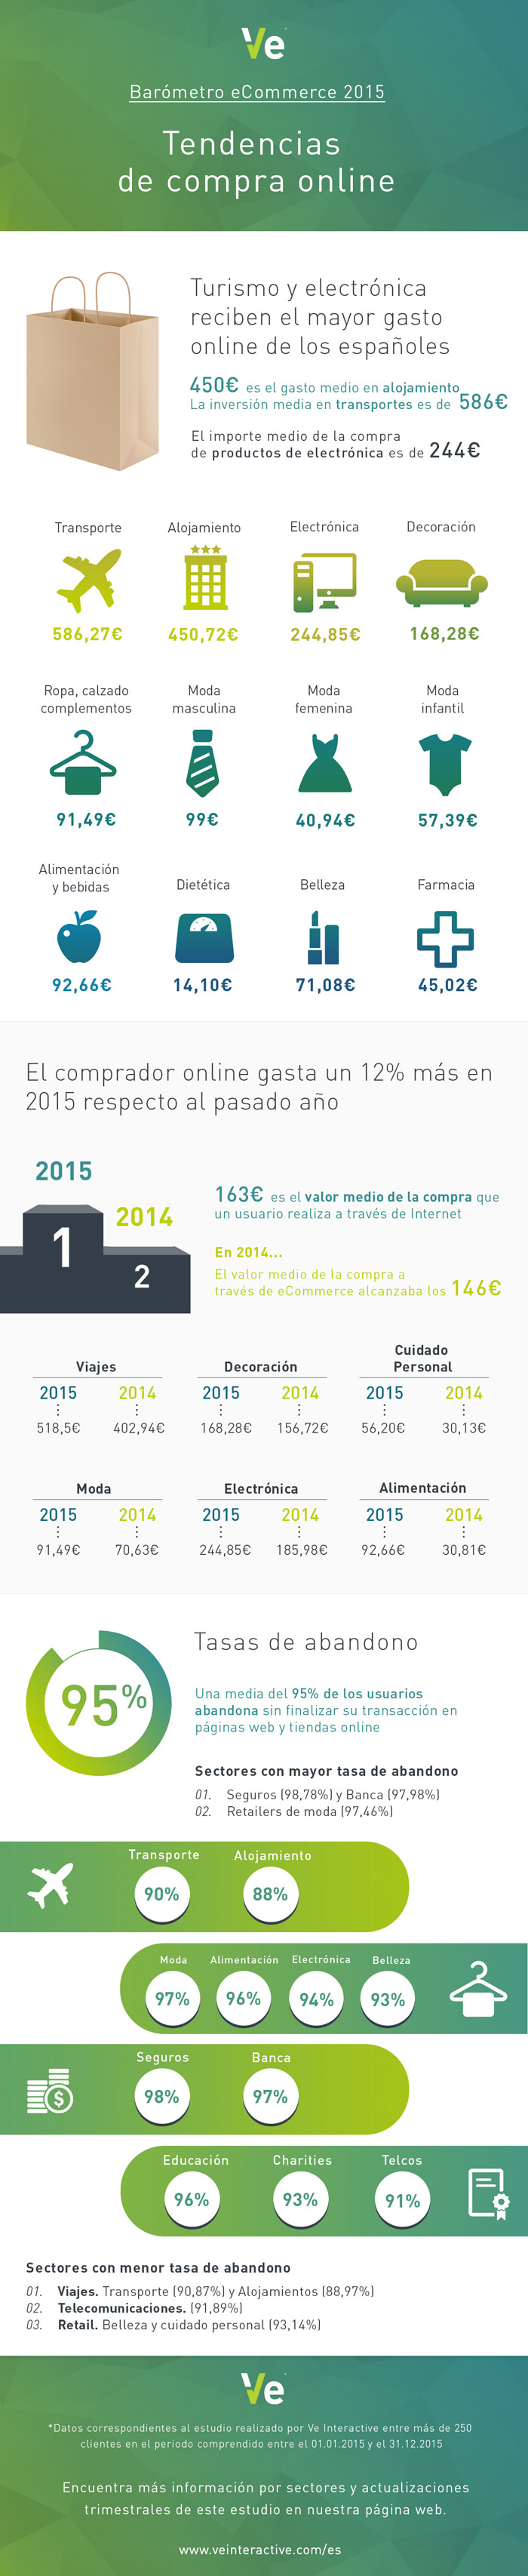 Los españoles gastan alrededor de 163 € en una compra on-line, un 12 % más que en 2014